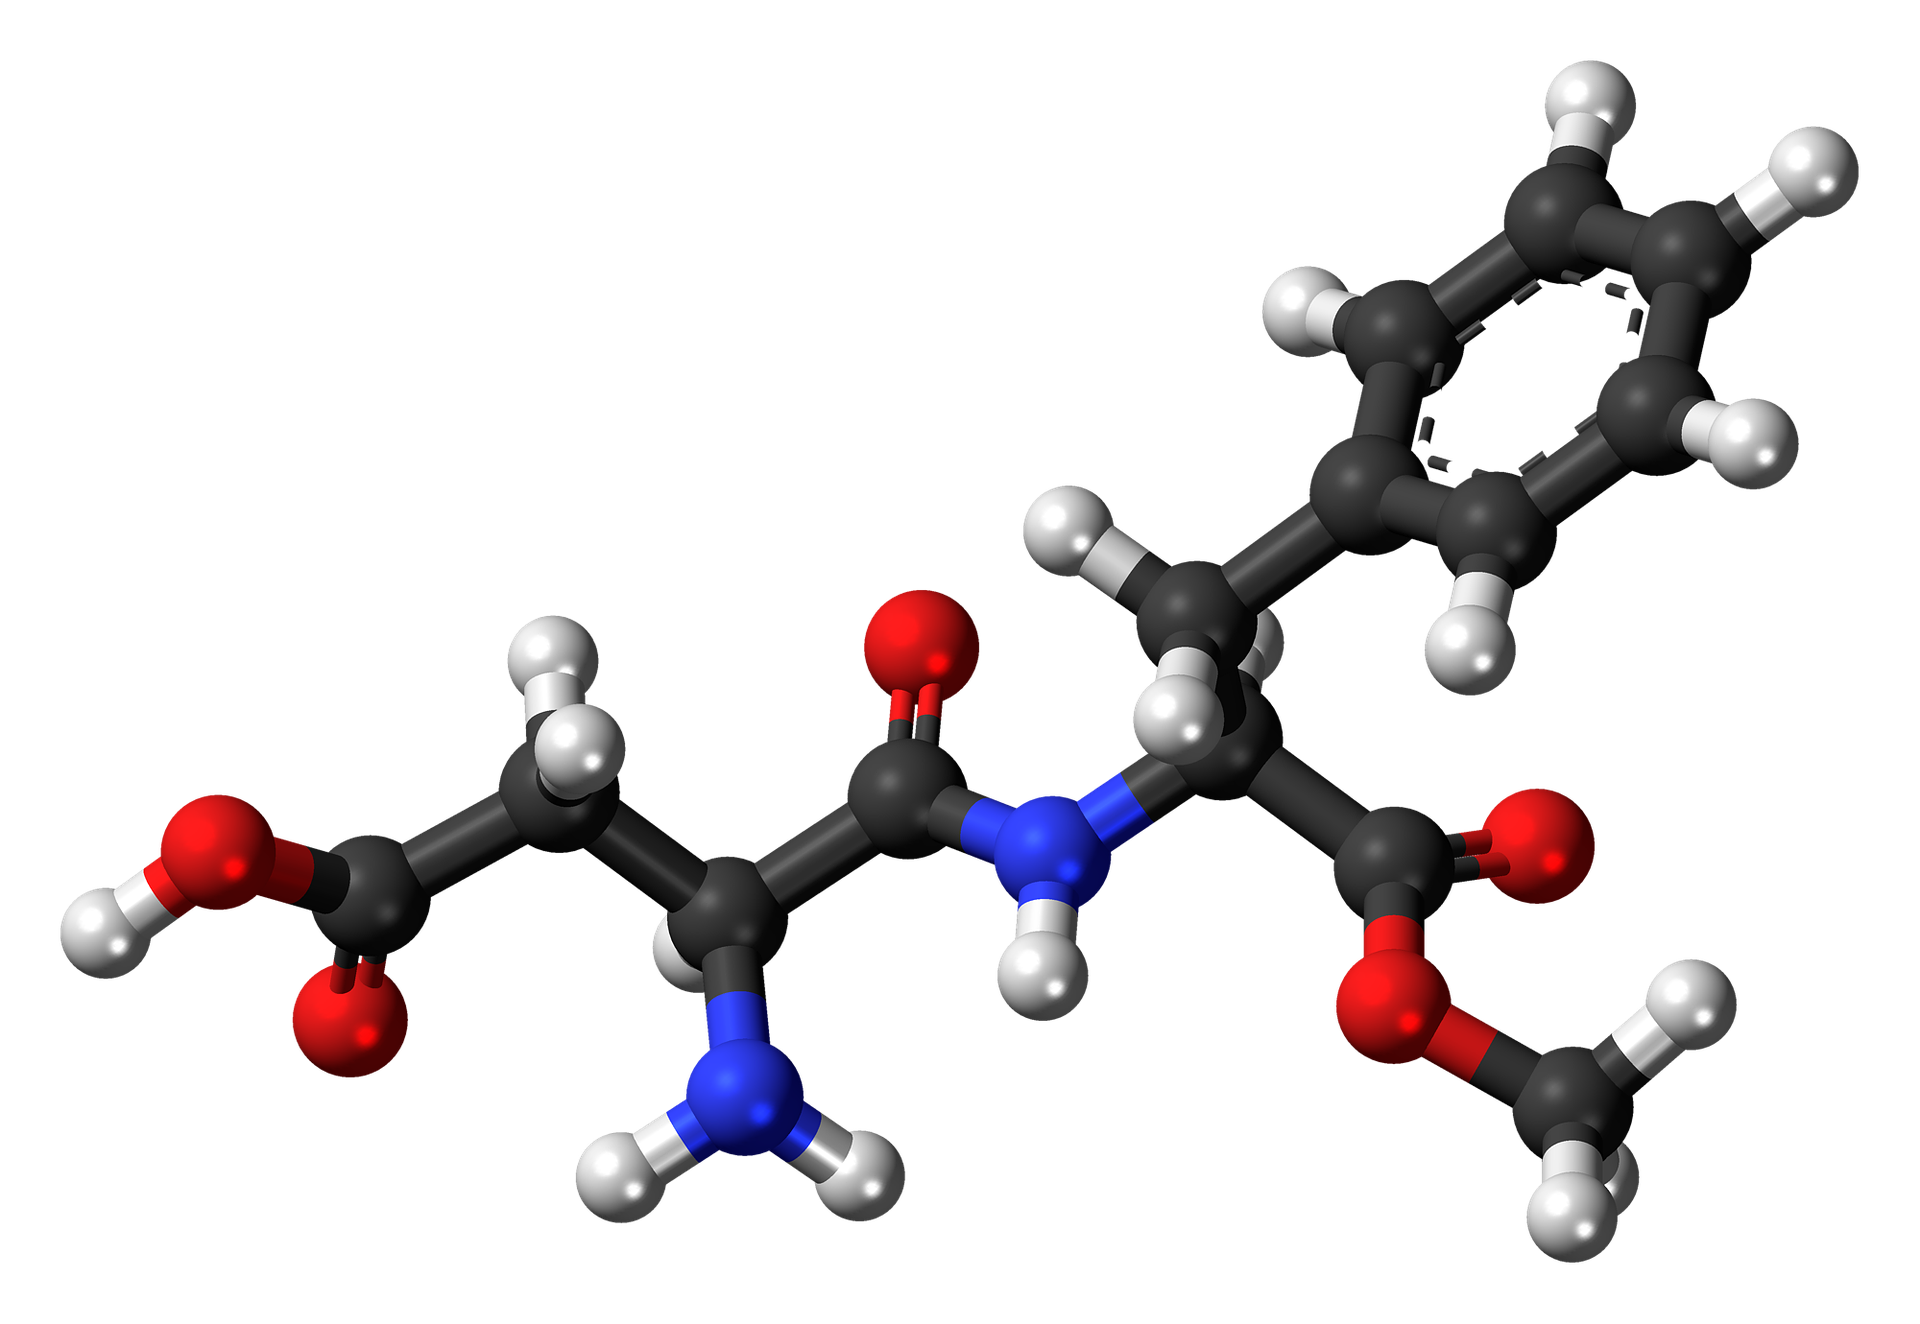 molekula_azpartam.png